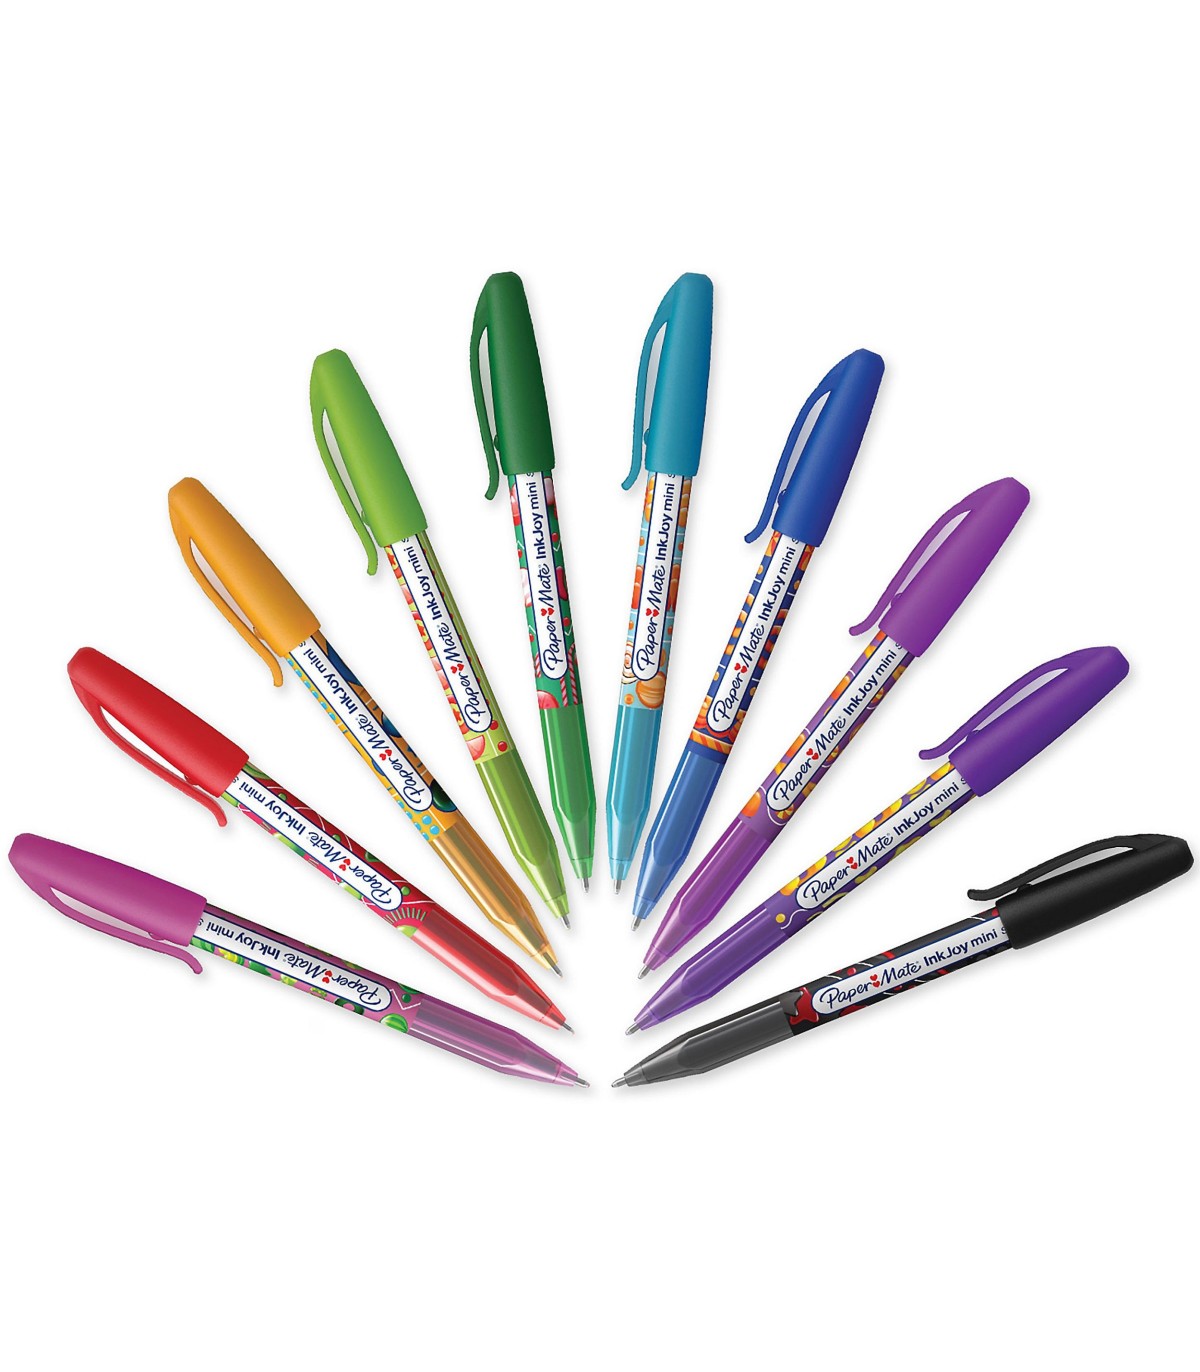 PAPER MATE InkJoy 100ST stylos bille avec bouchon, pointe fine (0,7 mm), assortiment de couleurs classiques